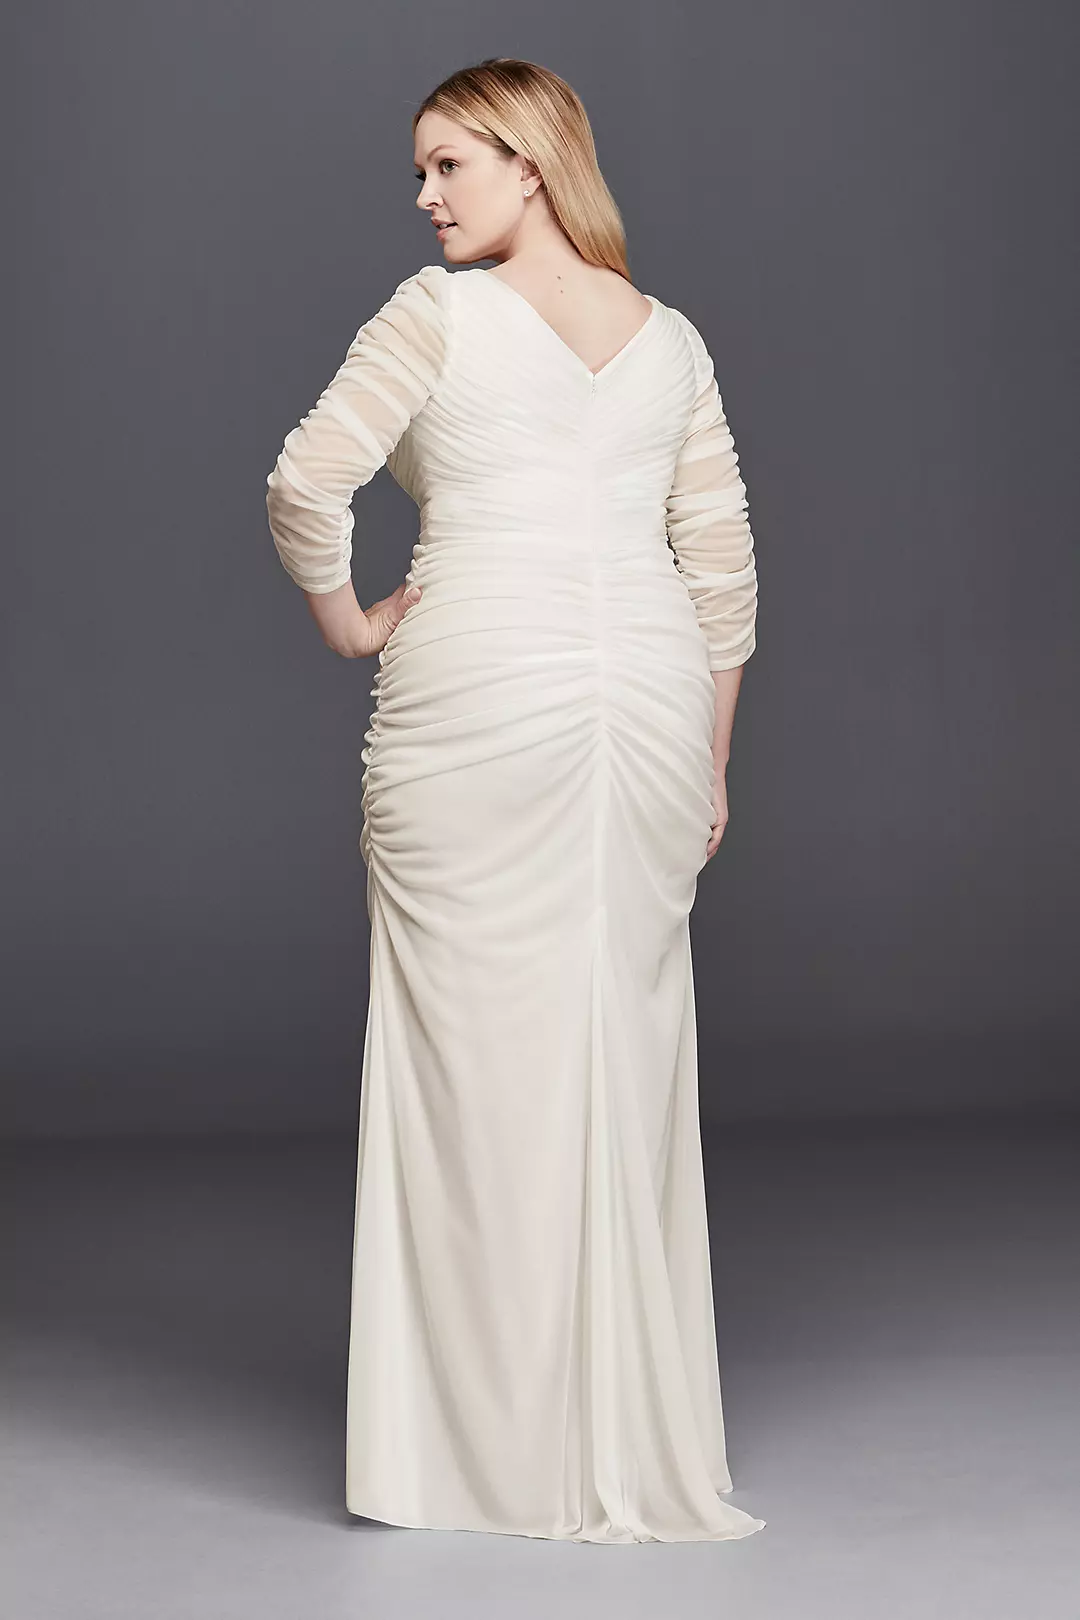 3/4 Illusion Sleeve Wedding Dress with Ruching Image 2